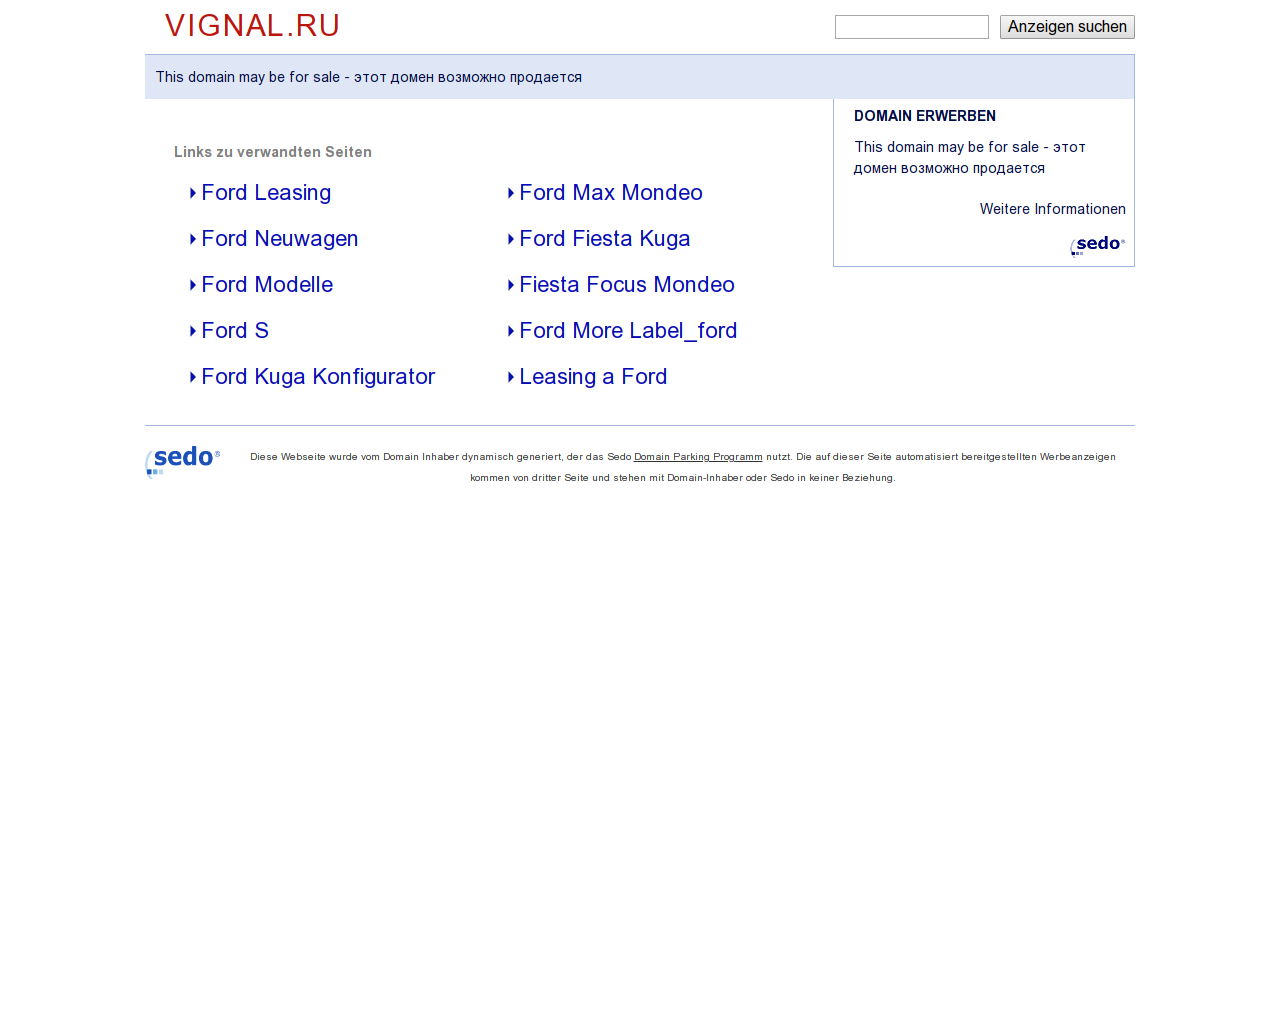 Изображение сайта vignal.ru в разрешении 1280x1024